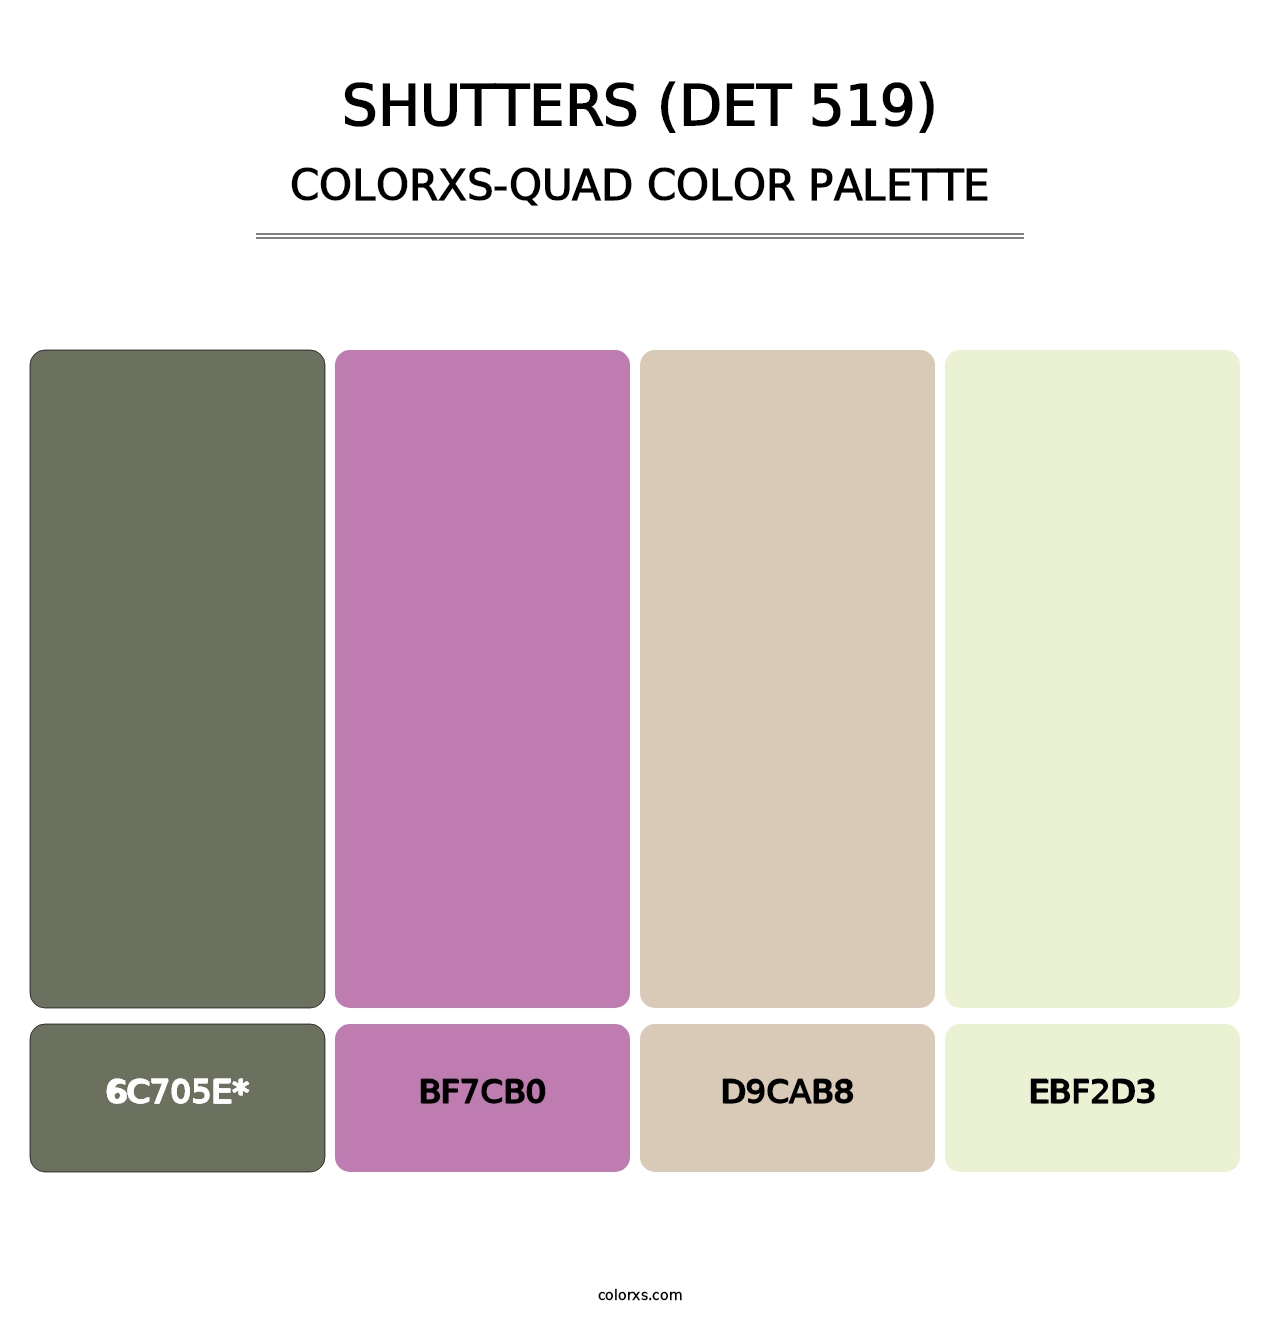 Shutters (DET 519) - Colorxs Quad Palette